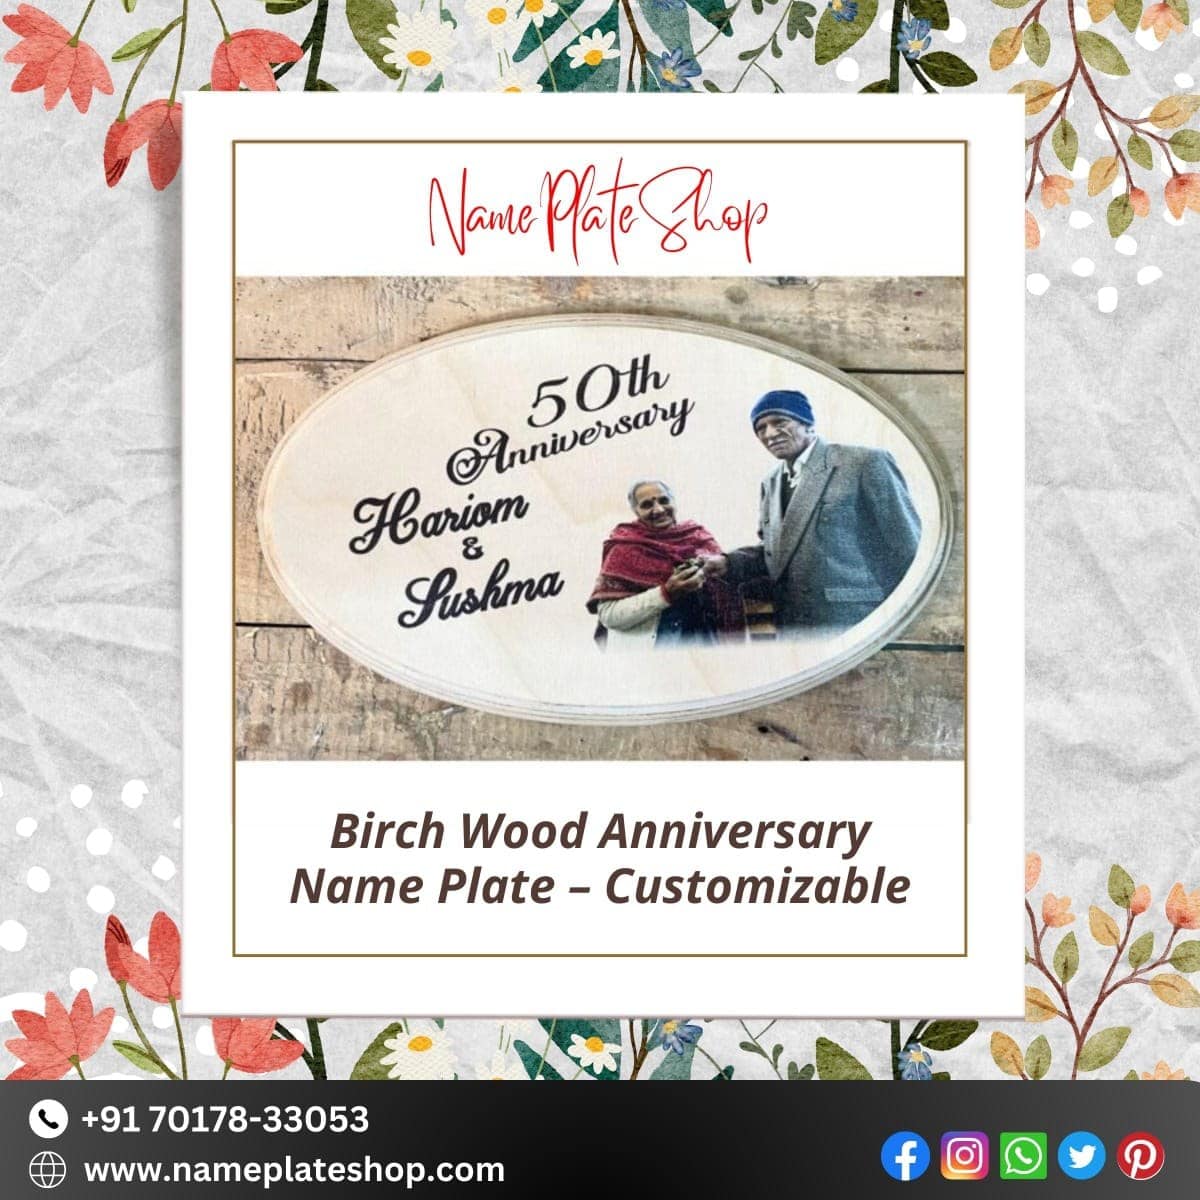 Birch Wood Anniversary Nameplate Customized